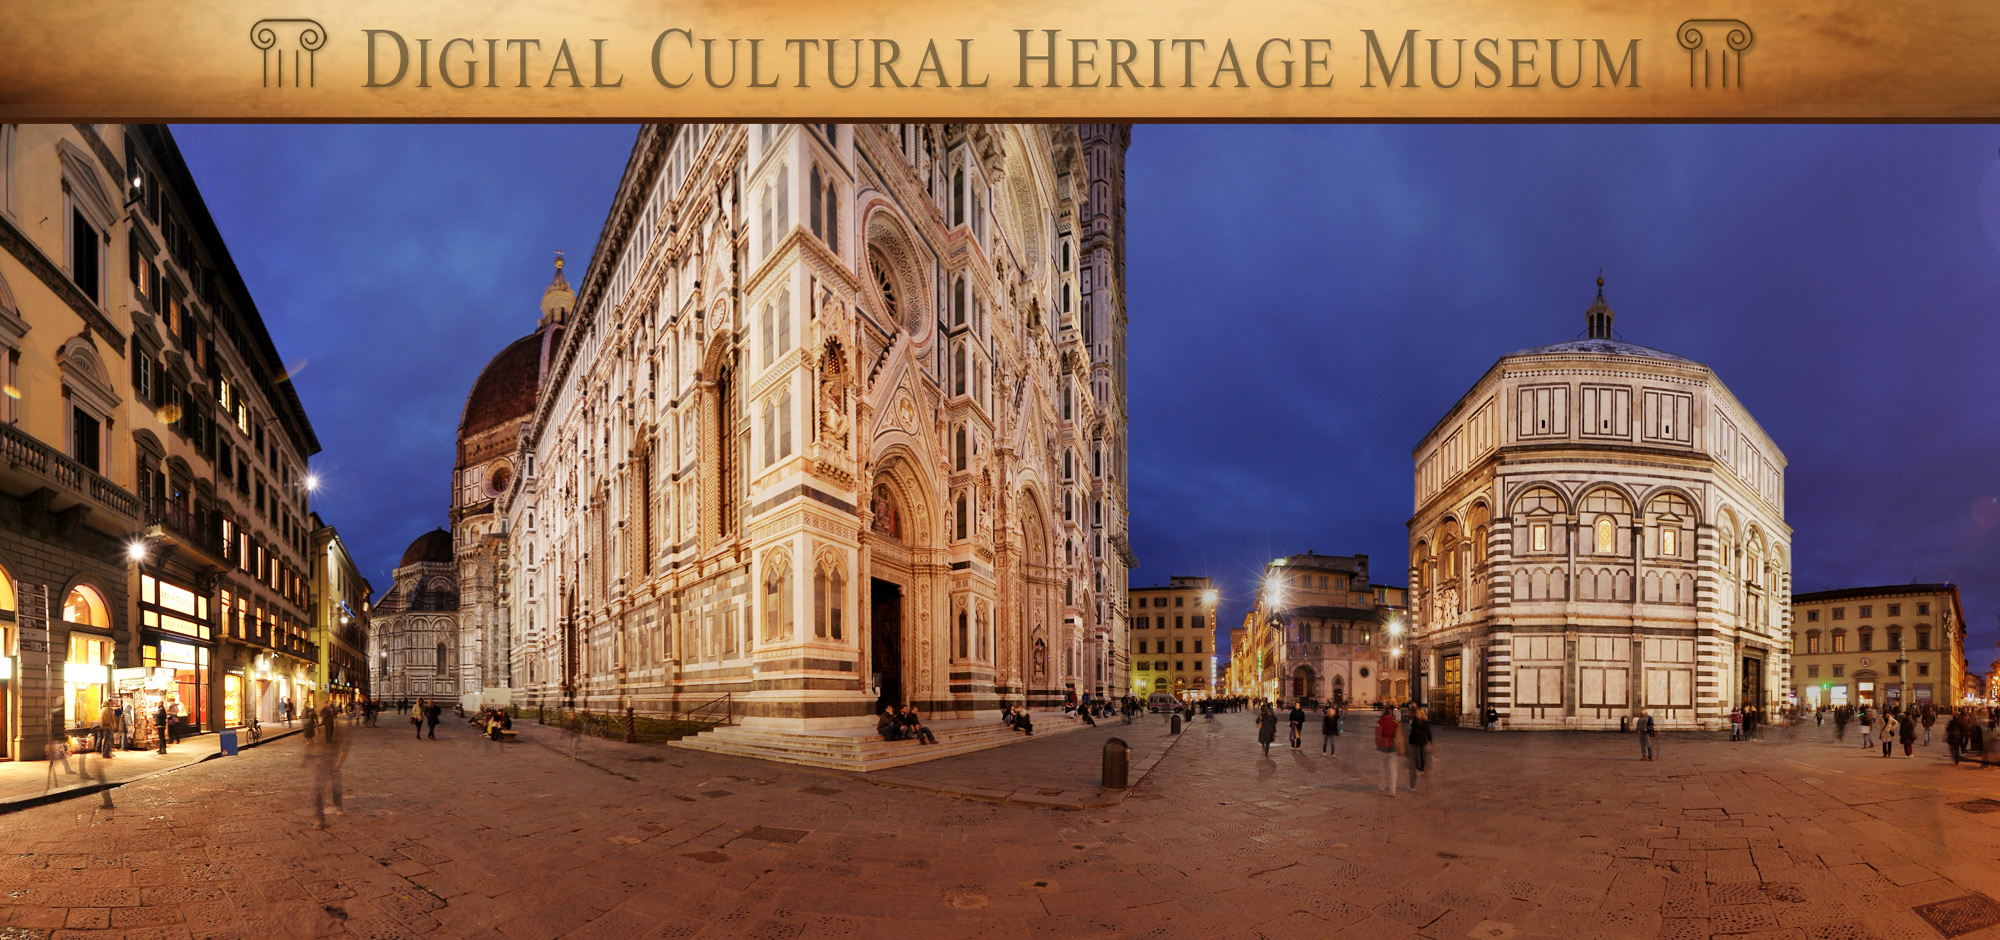 Italia Excelsa - Museo Digitale fondato da Fabio Gallo - Il Duomo di Firenze